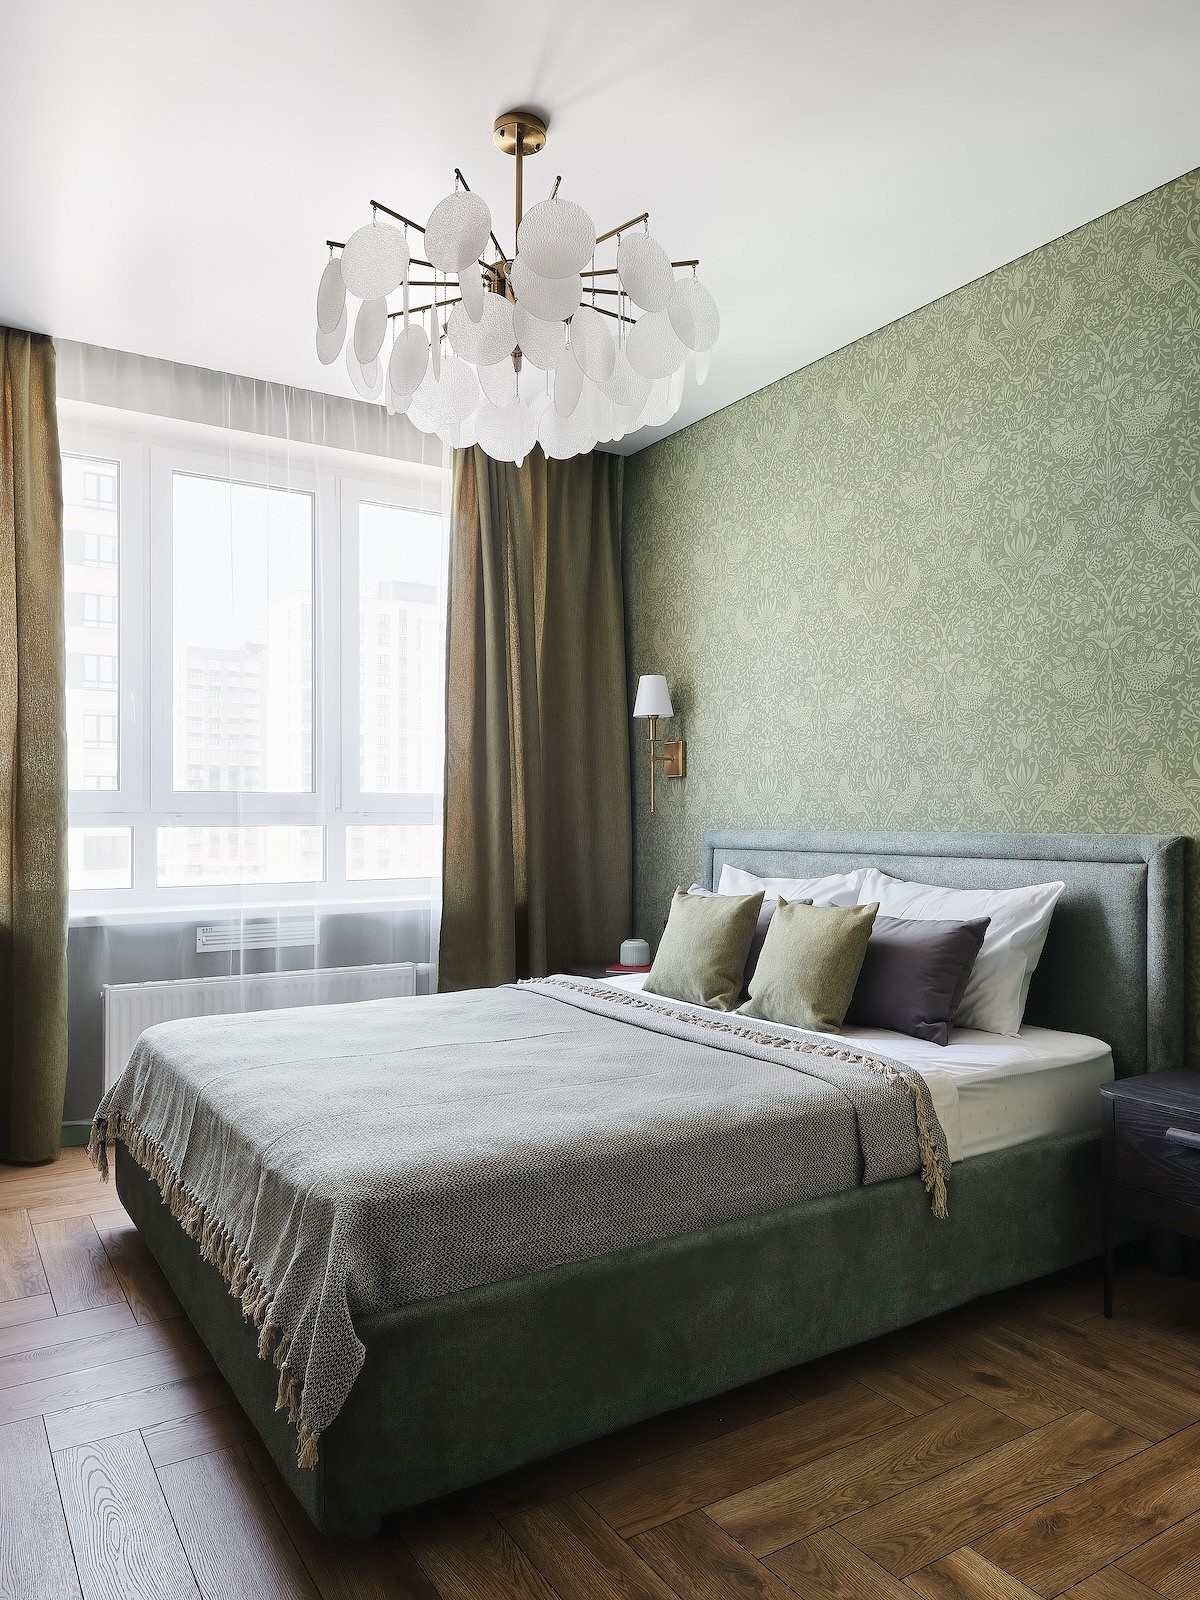 Какие обои для спальни выбирают дизайнеры? 6 потрясающих примеров30